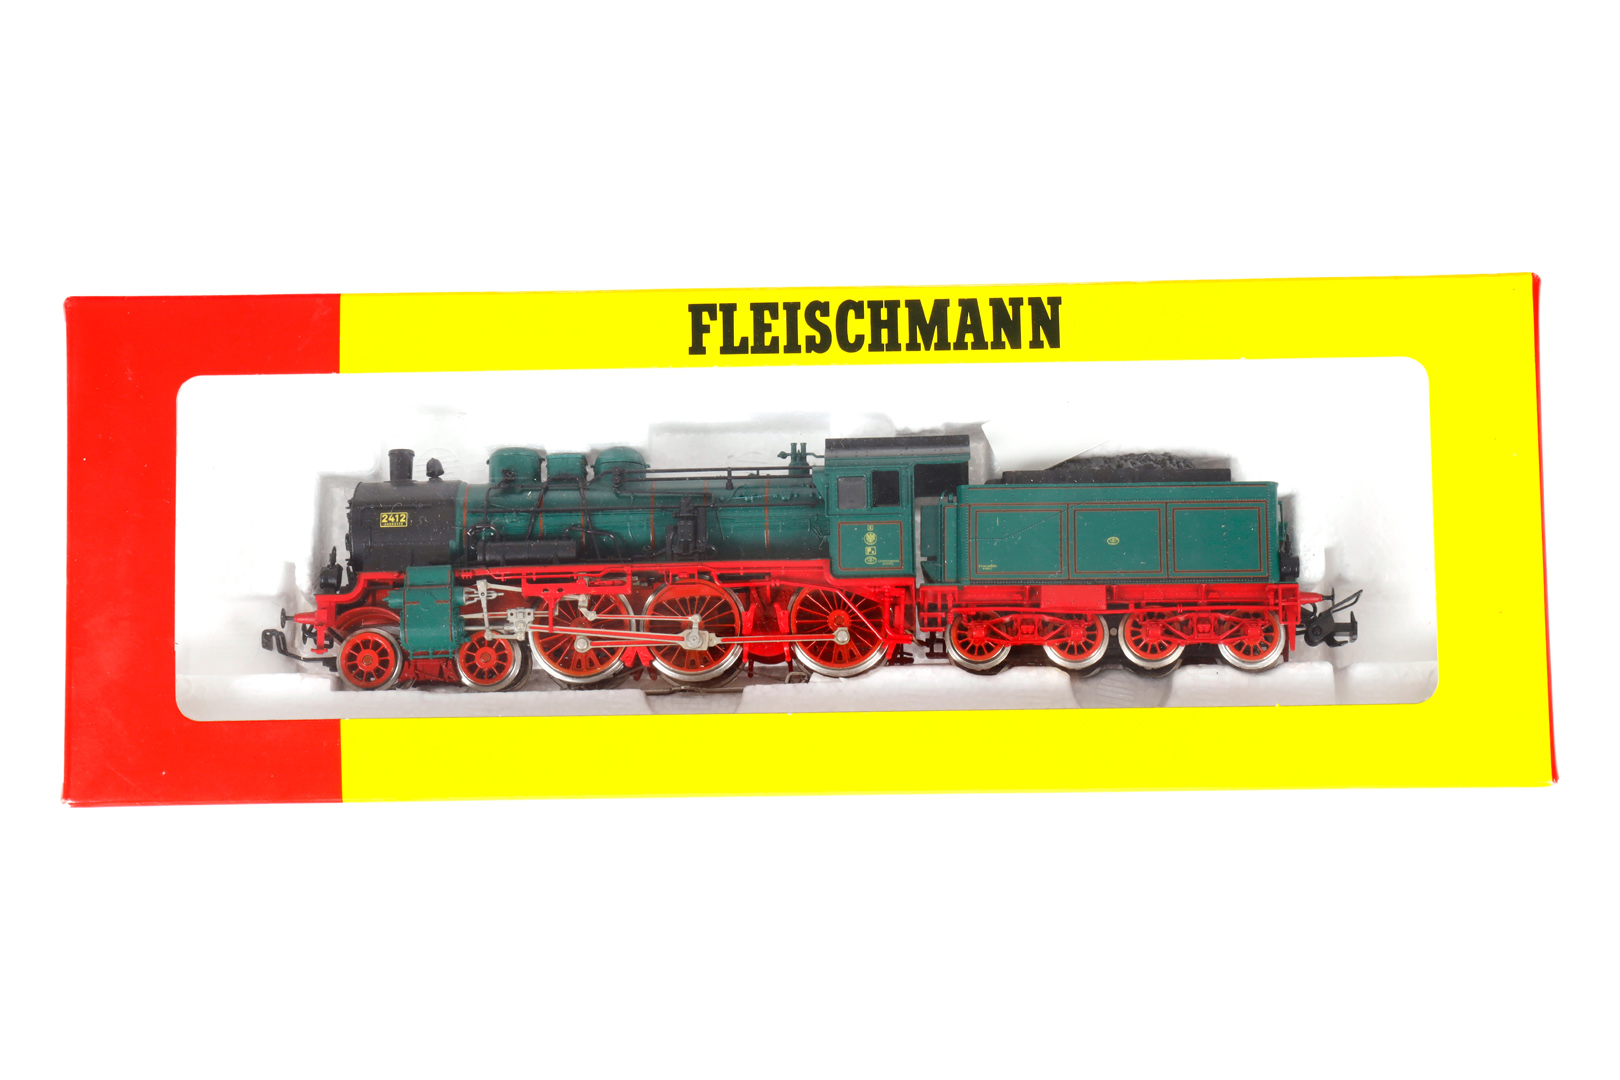 Fleischmann 2-C Schlepptenderlok ”2412” 4800, Spur H0, grün/schwarz, Alterungsspuren, im leicht